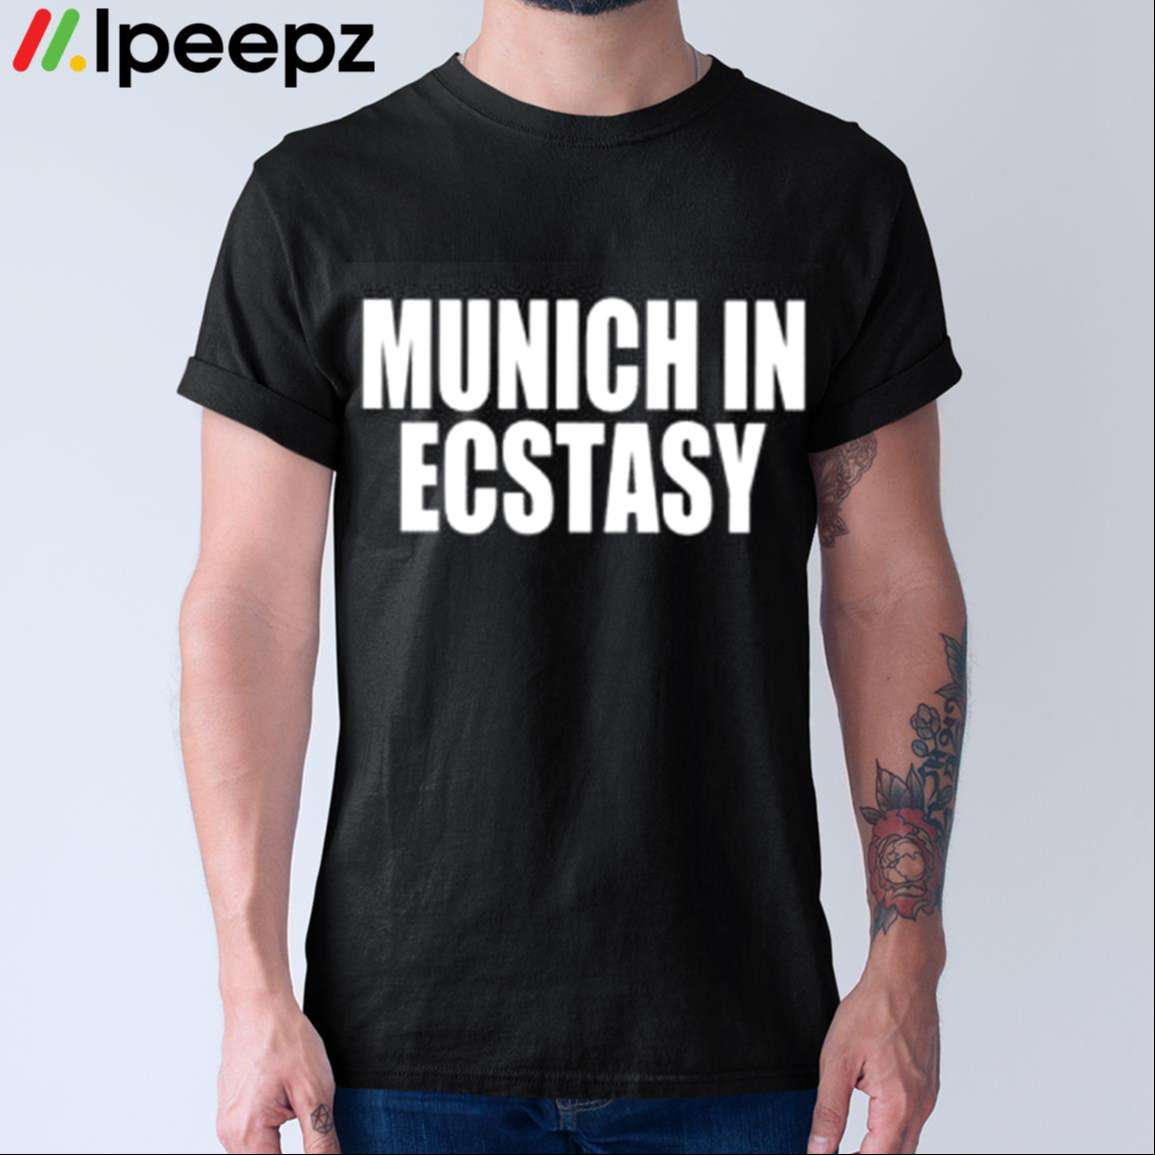 Munich In Ecstasy Shirt